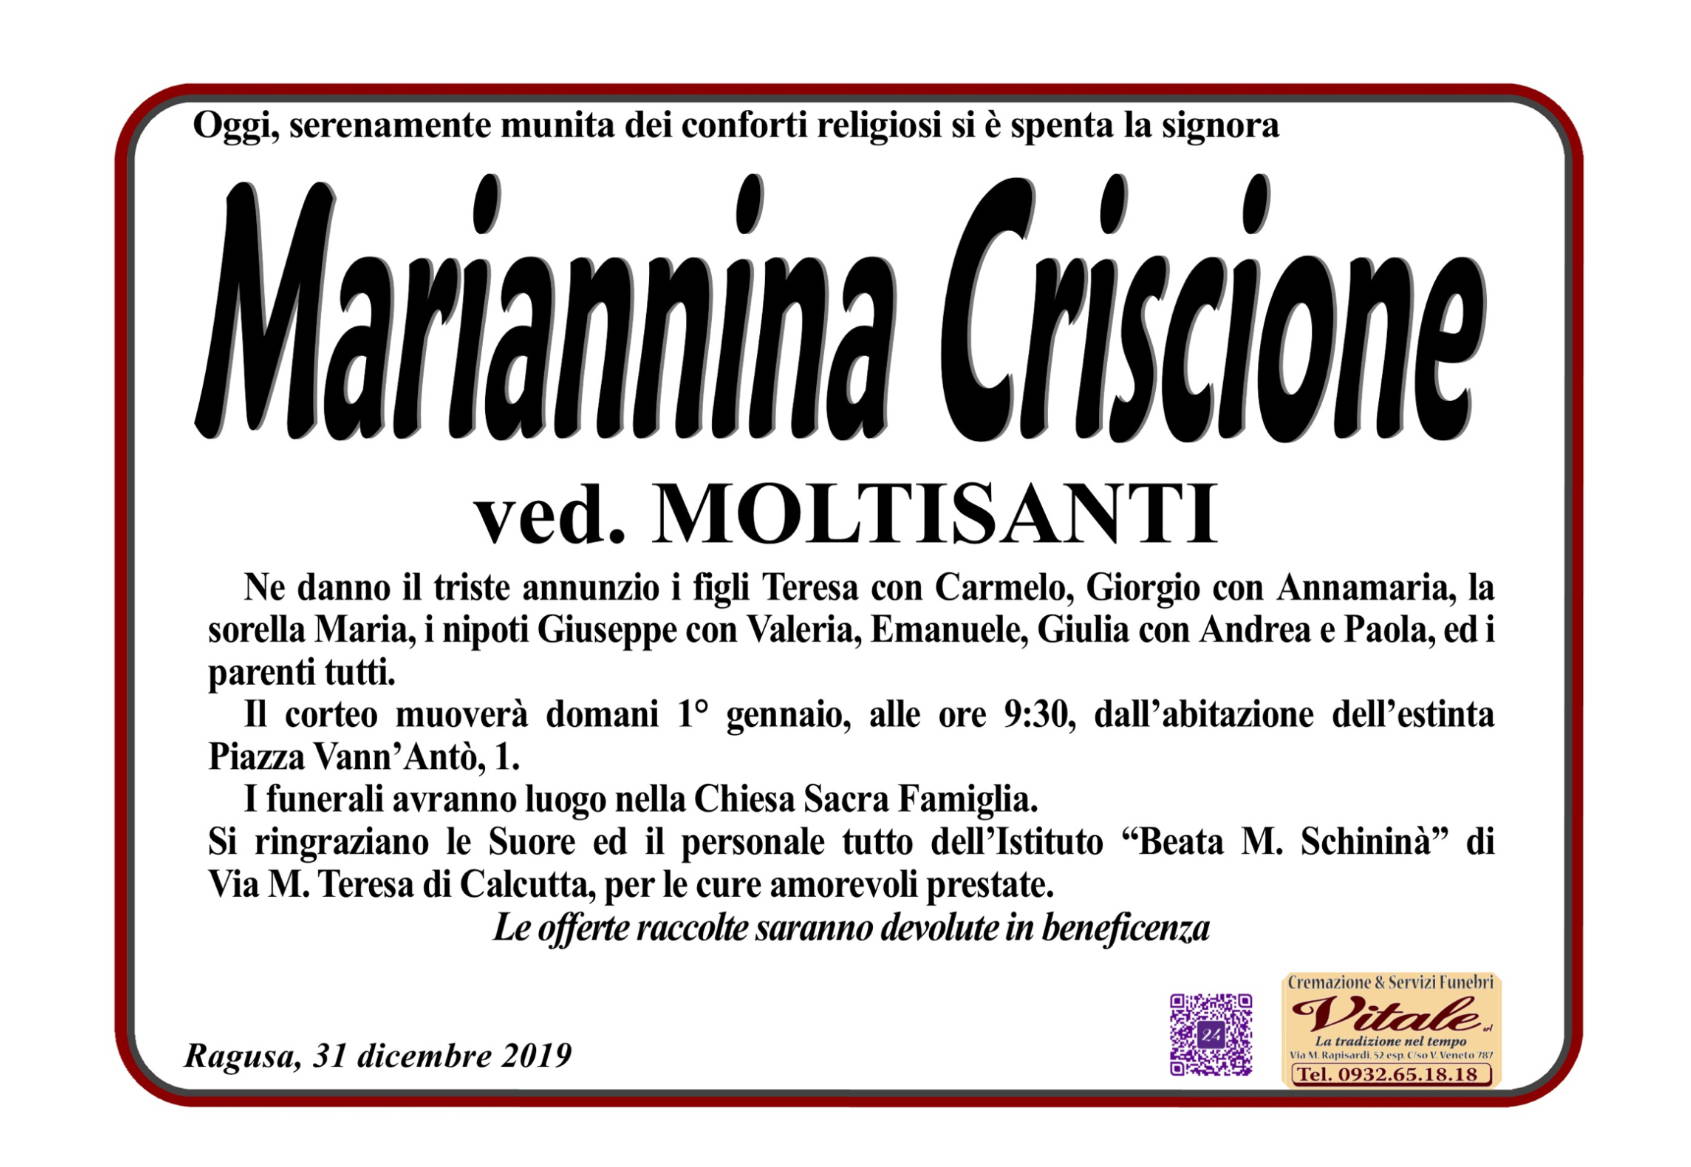 Mariannina Criscione